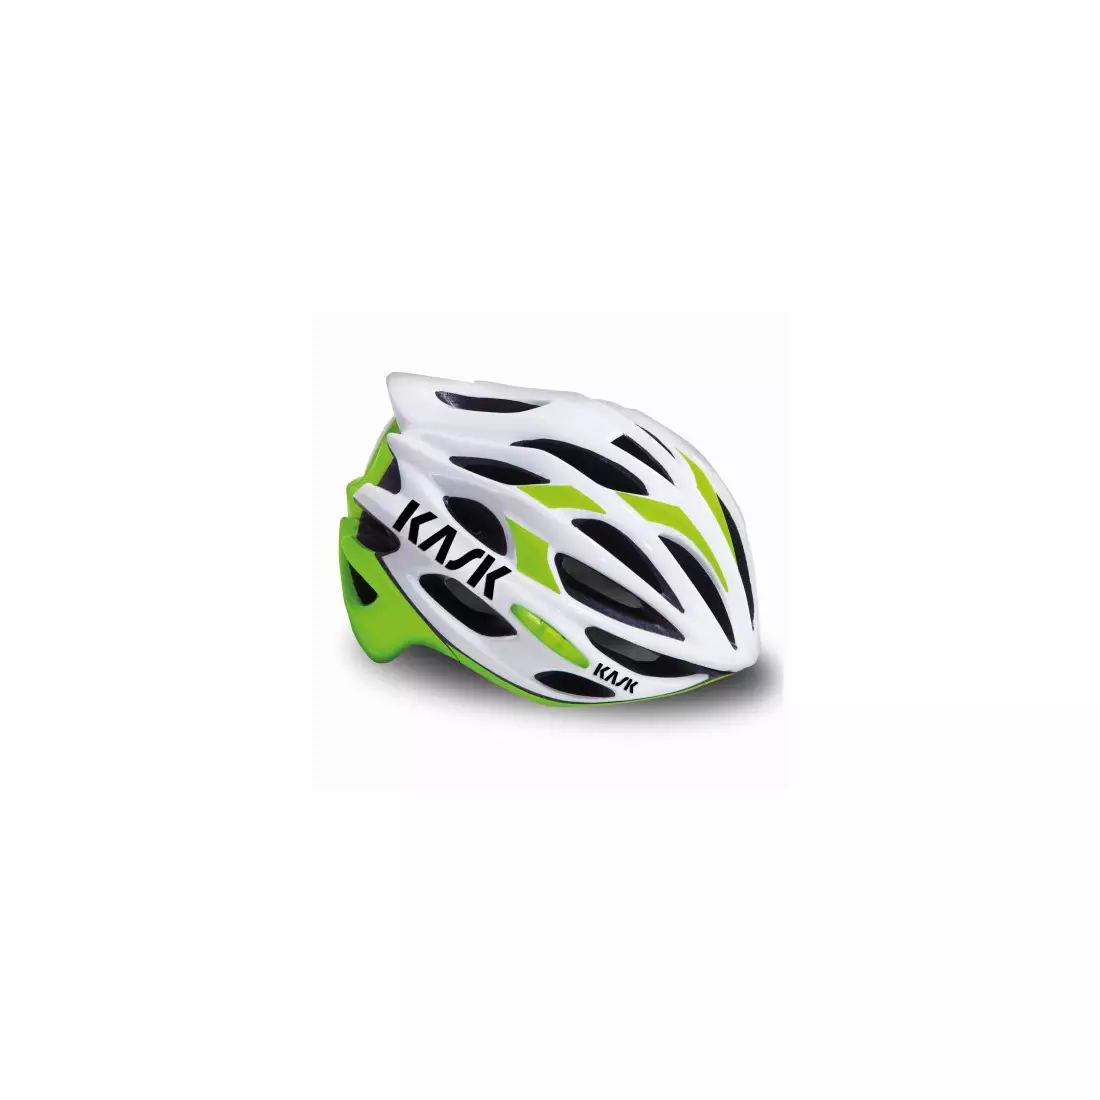 MOJITO HELM - Fahrradhelm CHE00026.208 Farbe: weiß-grün